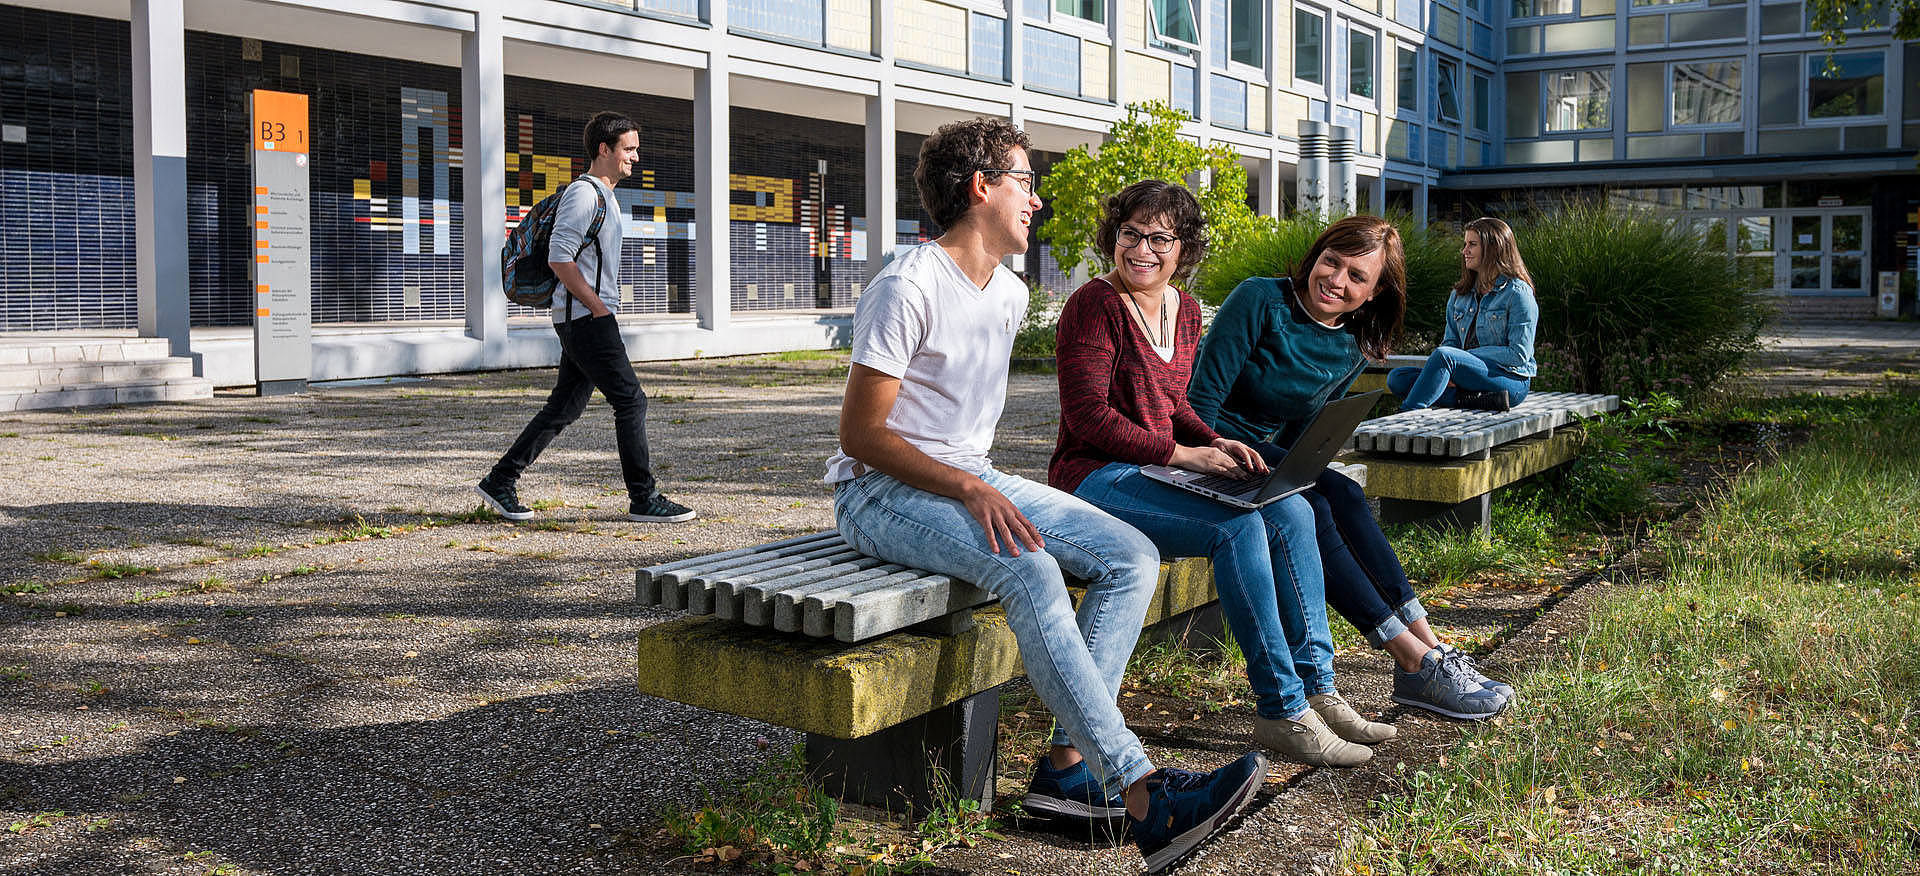 Studierende sitzen auf Bänken vor einem Universitätsgebäude